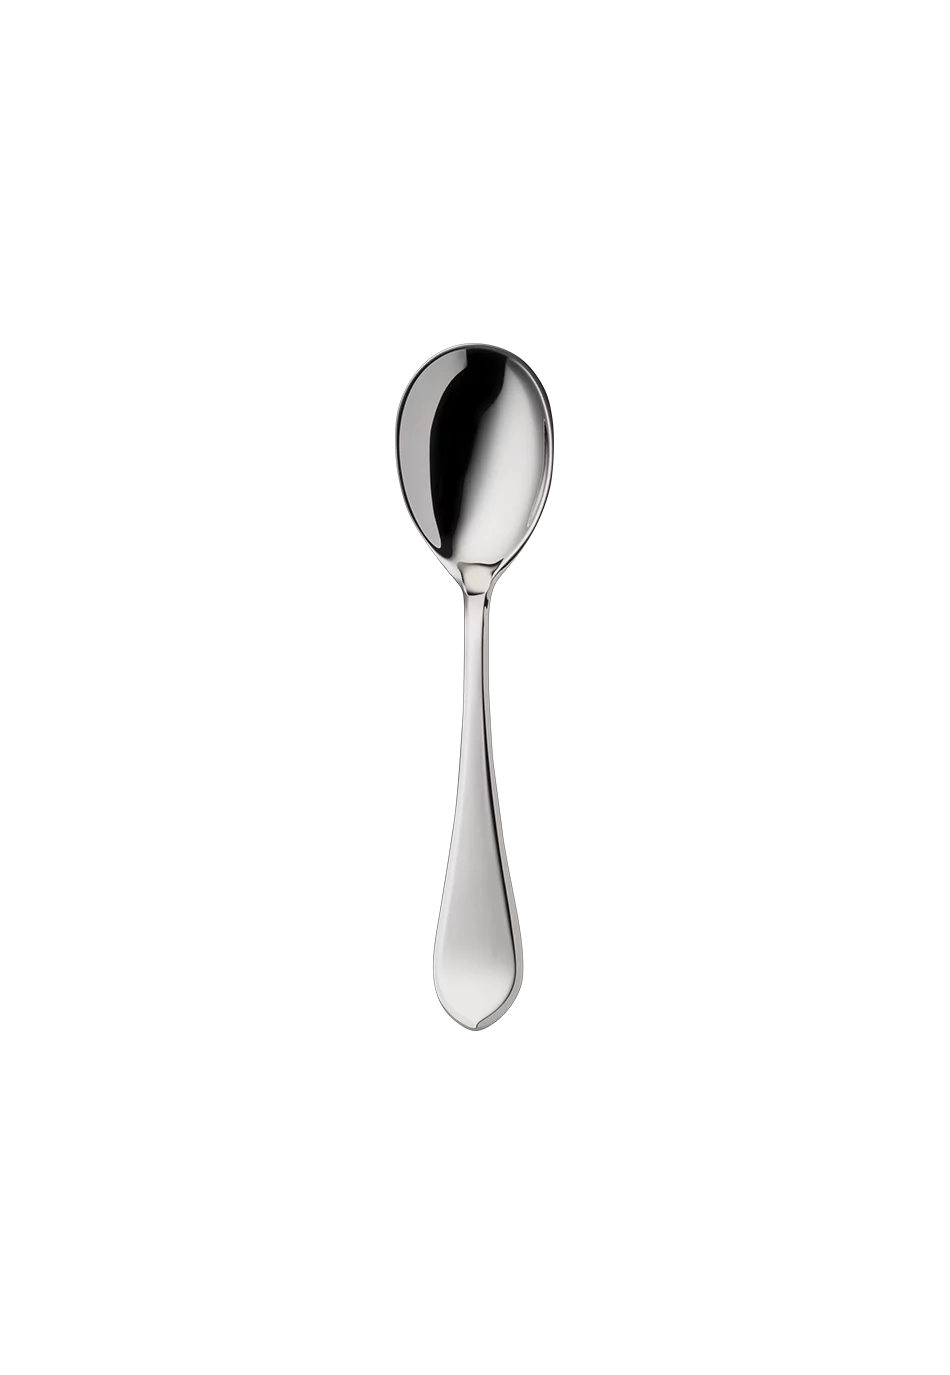 Eclipse Ice-Cream Spoon (150g massive silverplated)